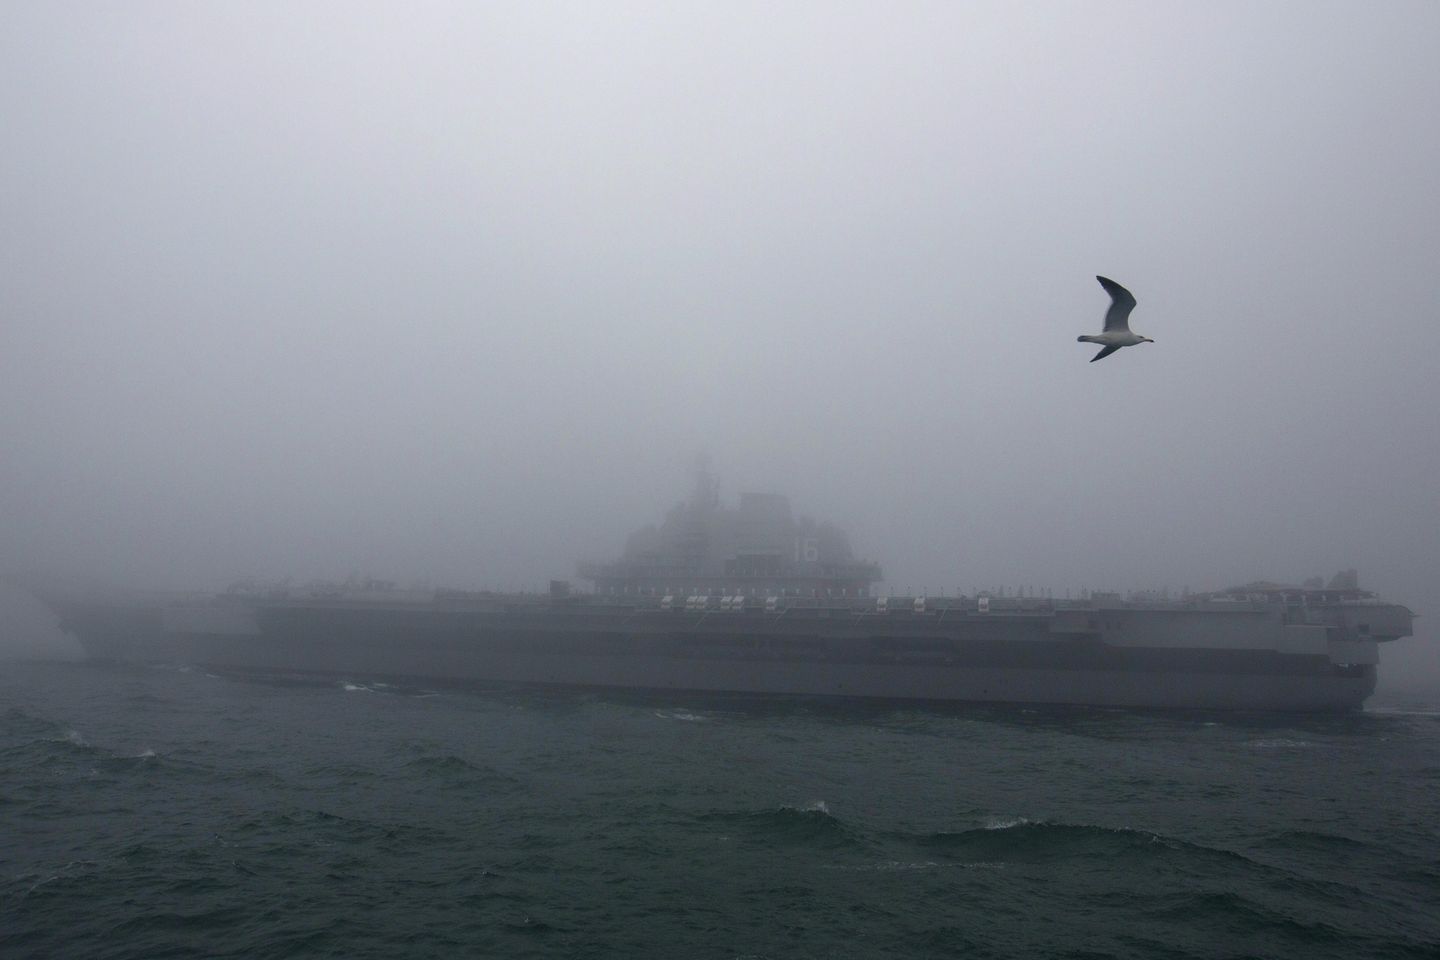 Çin, ikinci savaş gemisinin savaşa hazır olduğunu ve görevlerin uzatıldığını söyledi